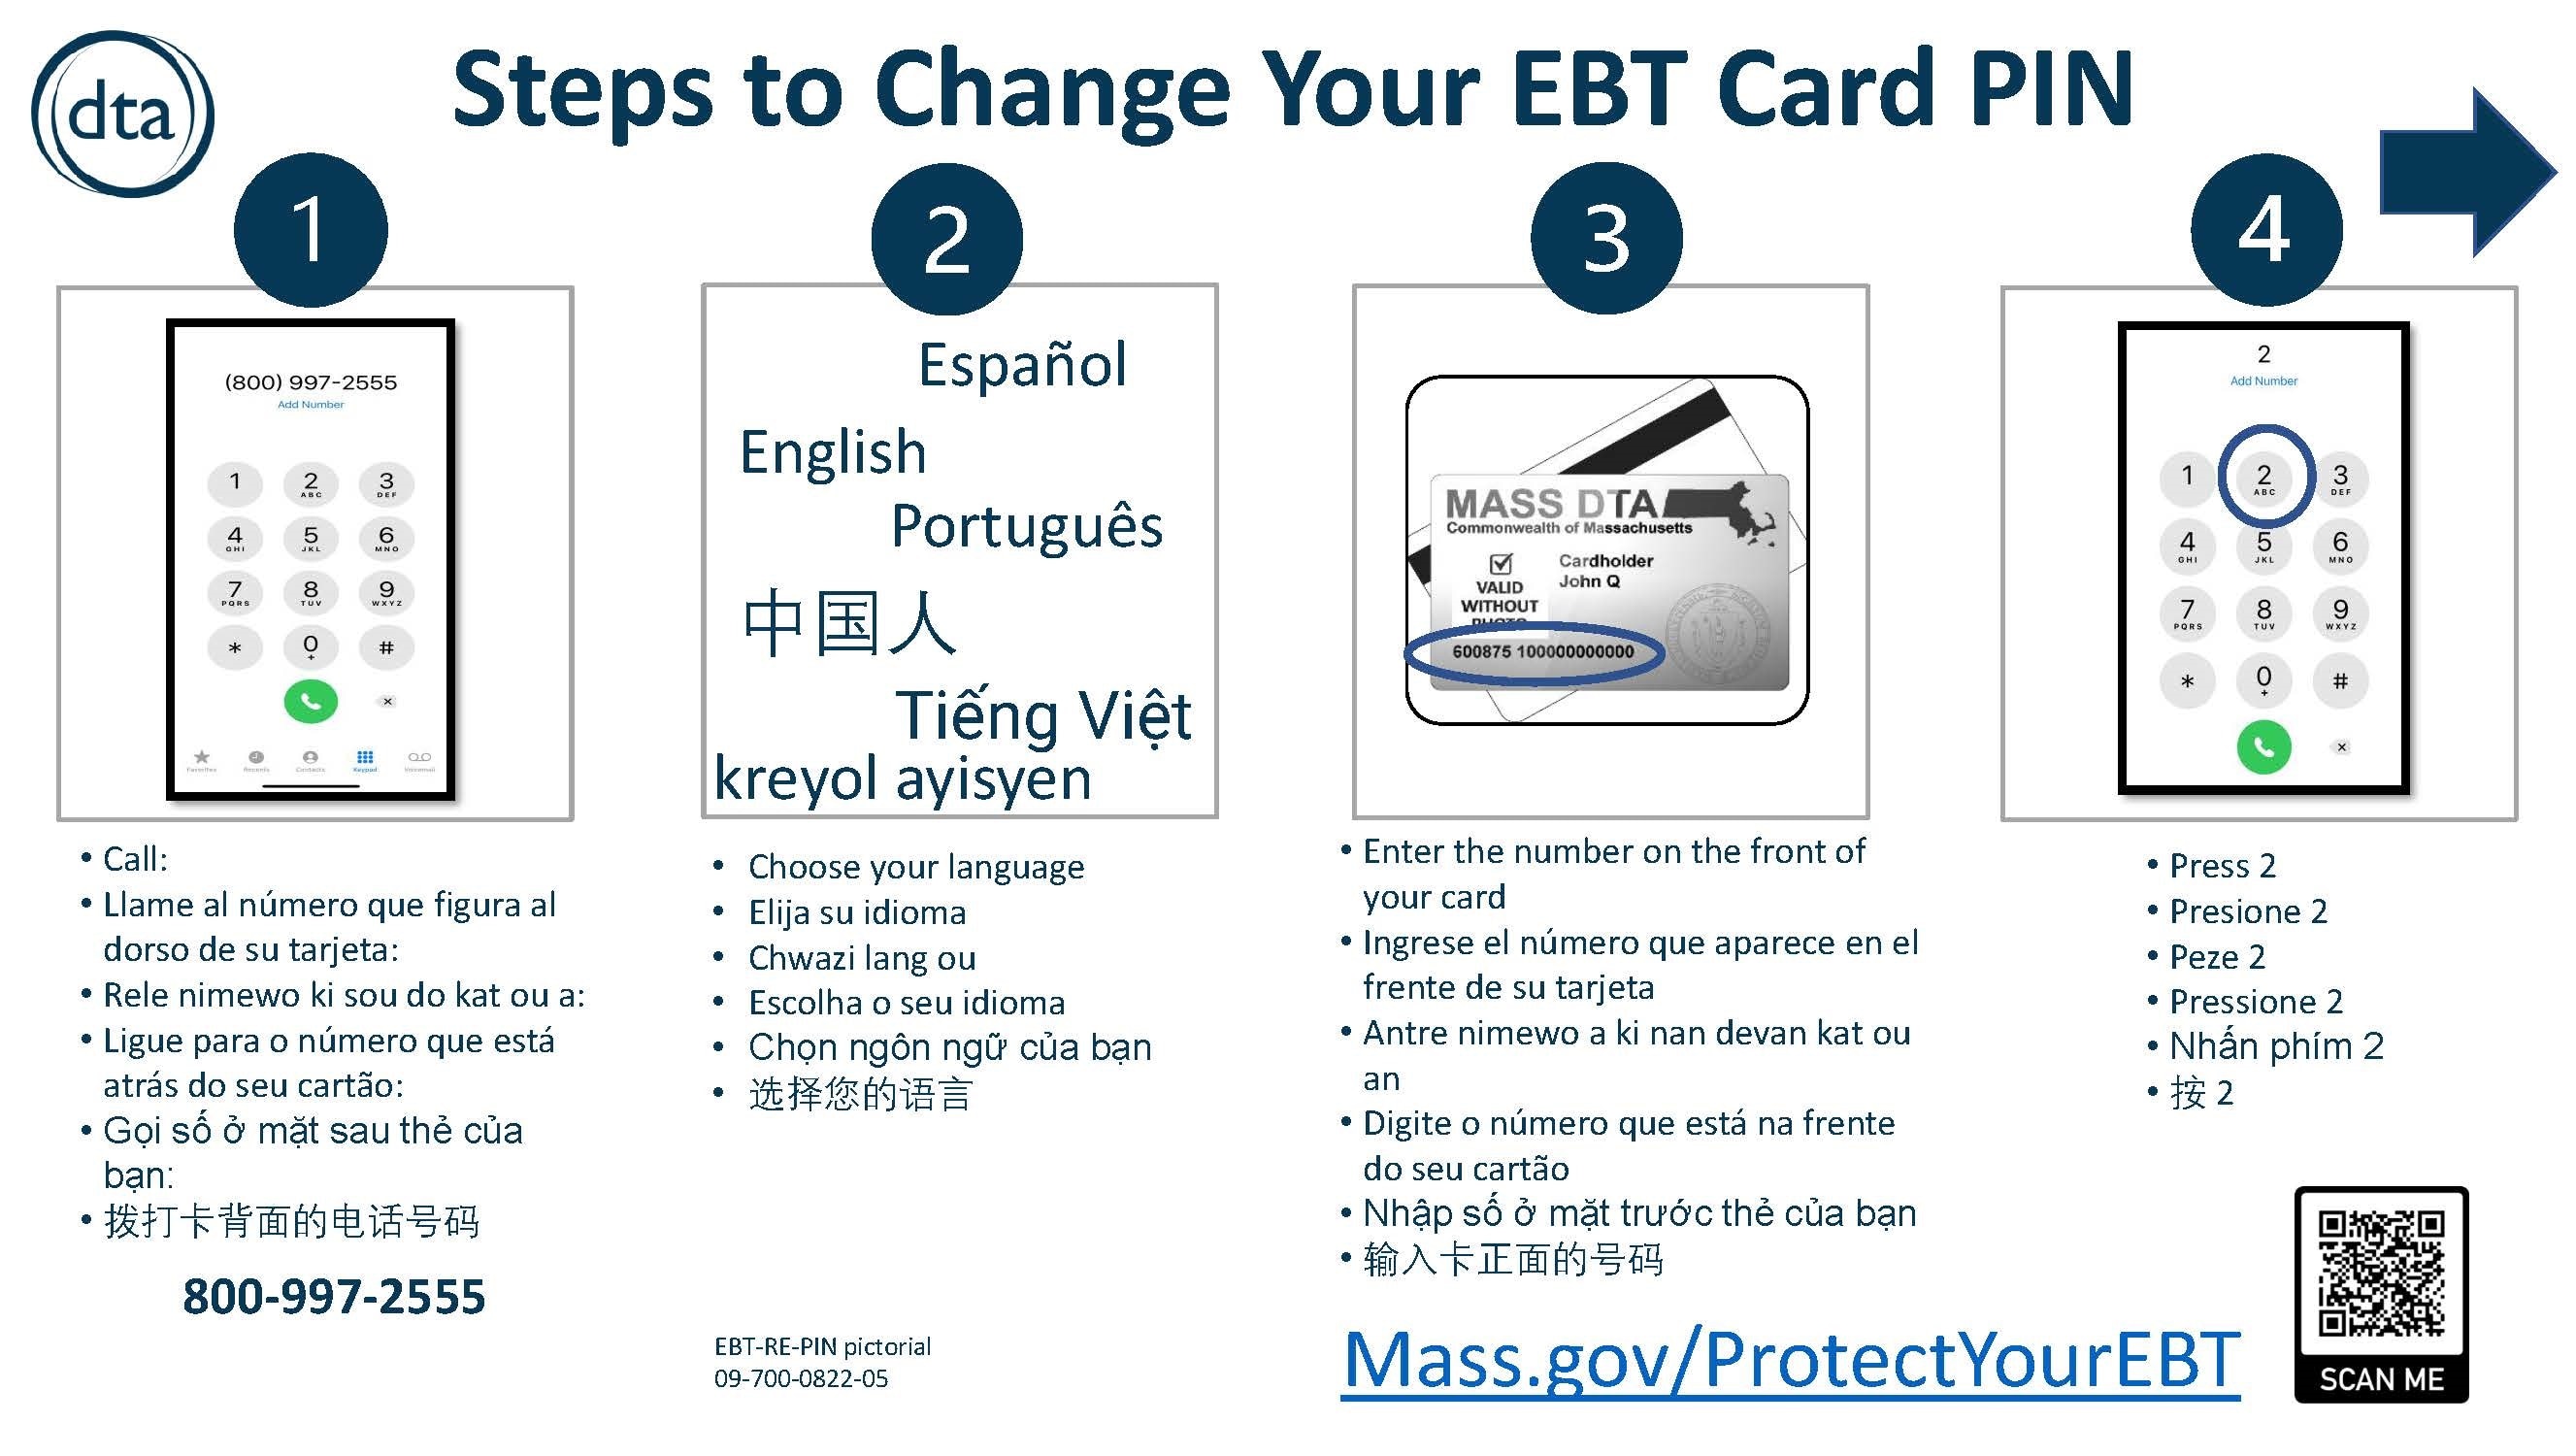 Protect Your EBT Benefits Outreach Materials Mass.gov